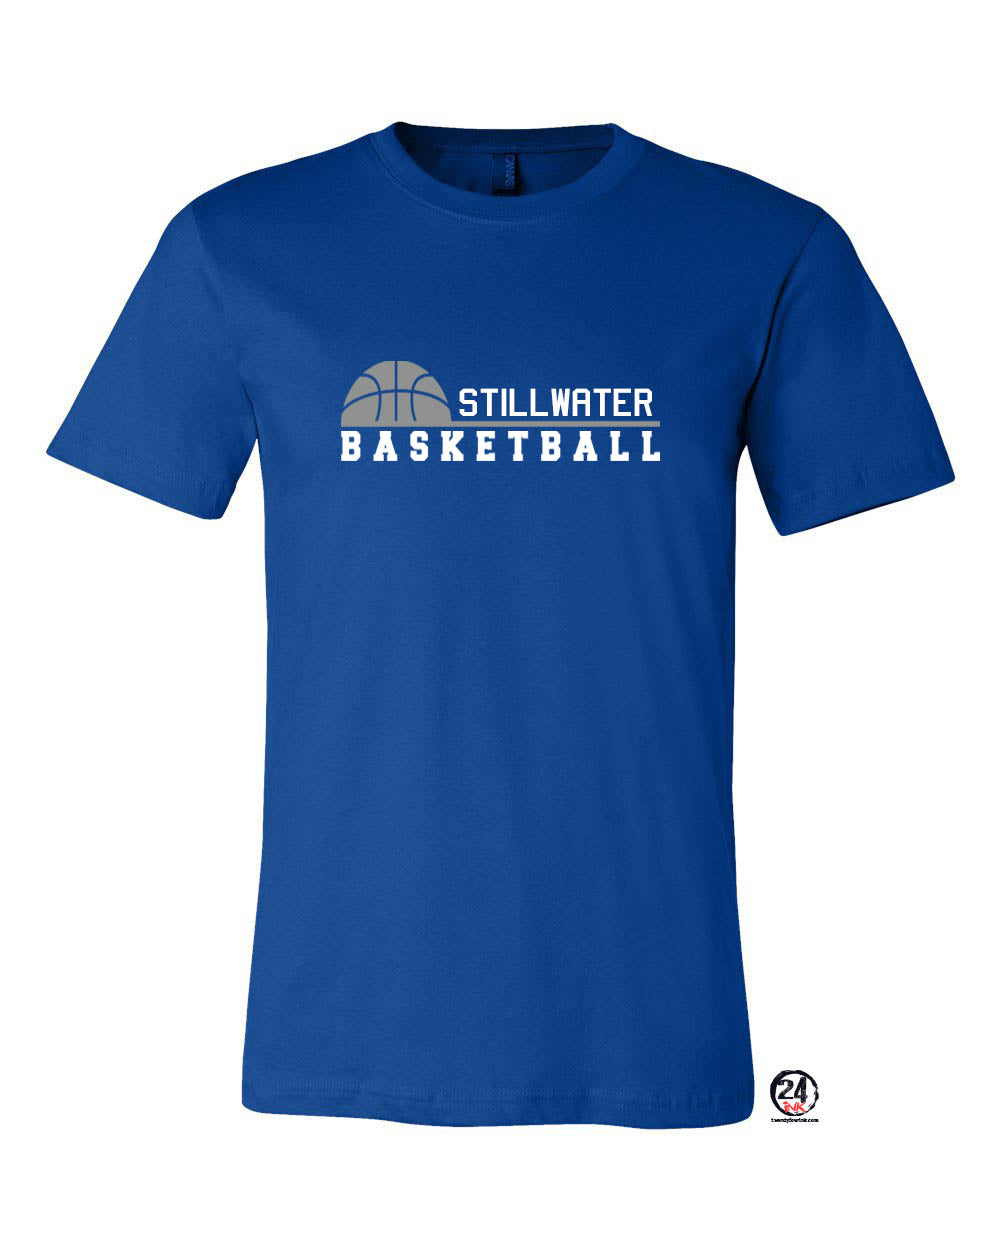 Stillwater Basketball Ball T-Shirt